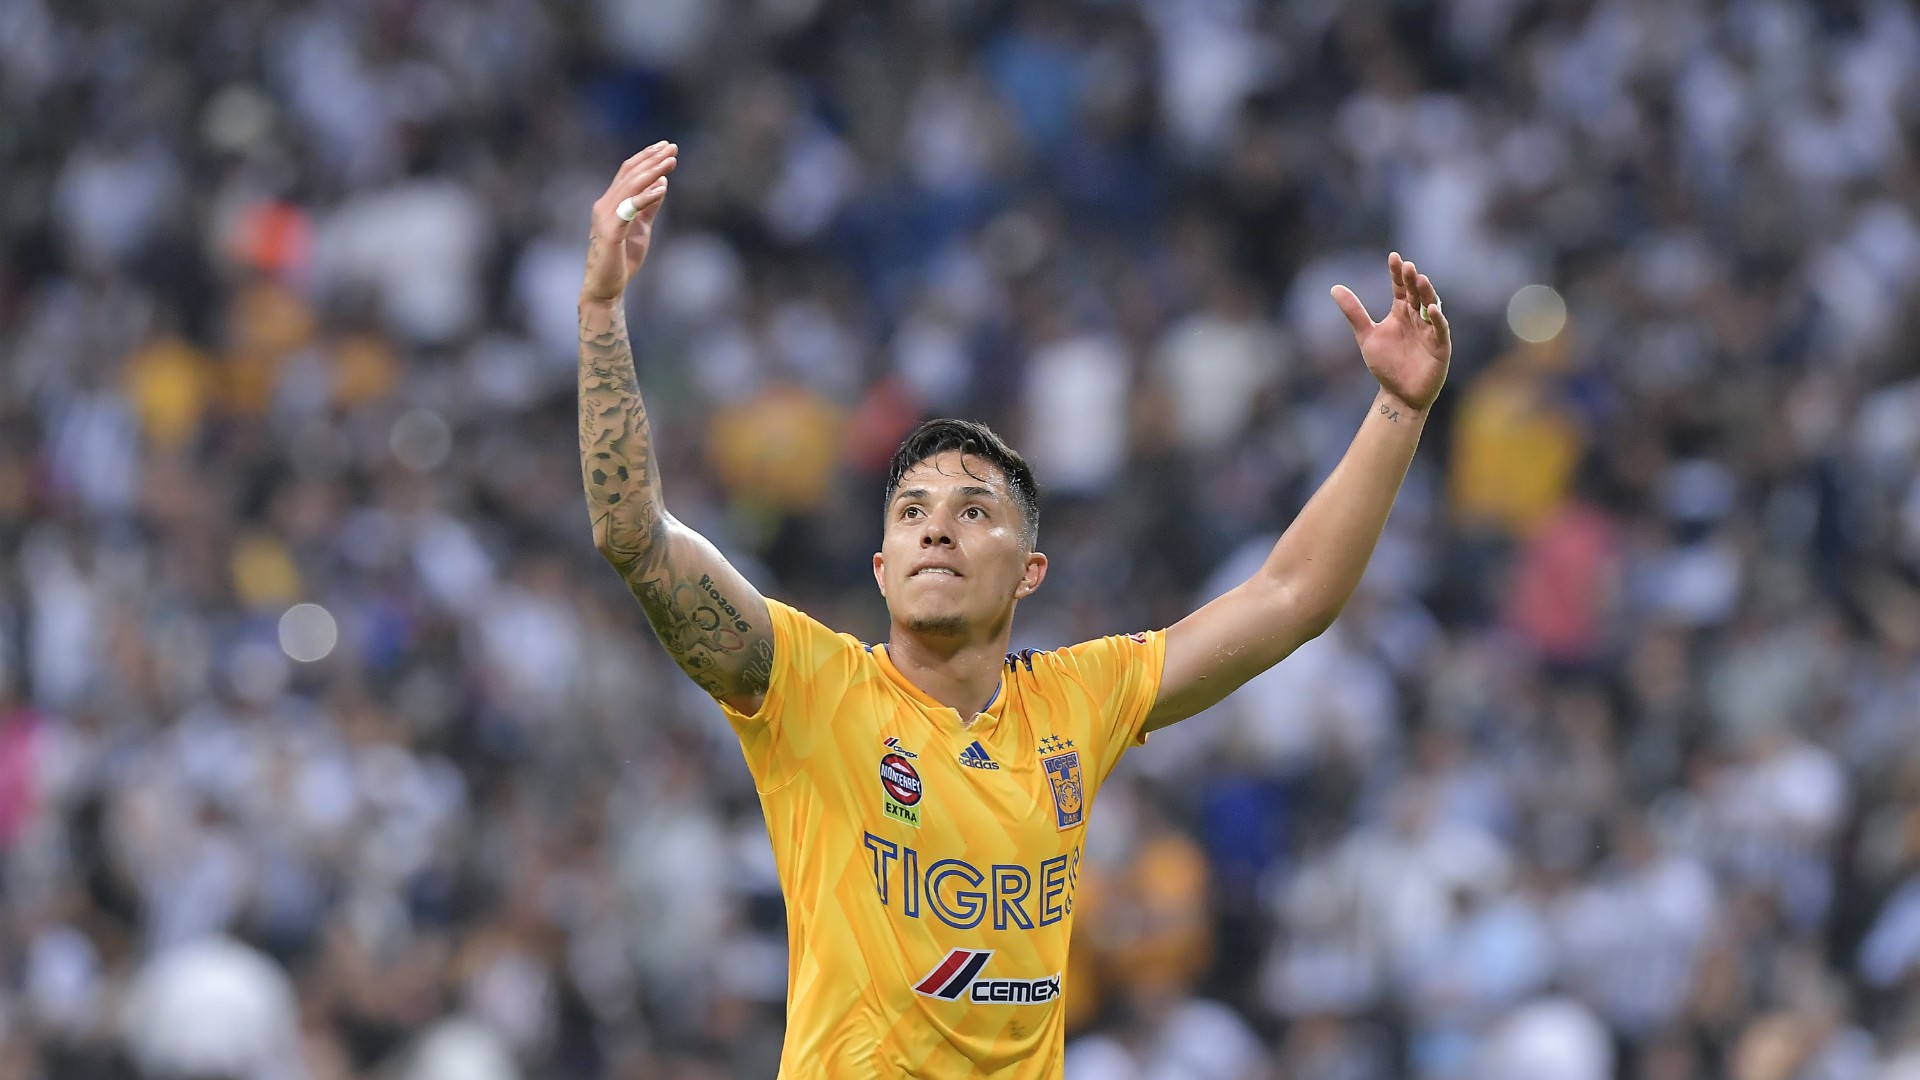 Plantilla de Tigres para el Clausura 2019 jugadores, números, cuerpo